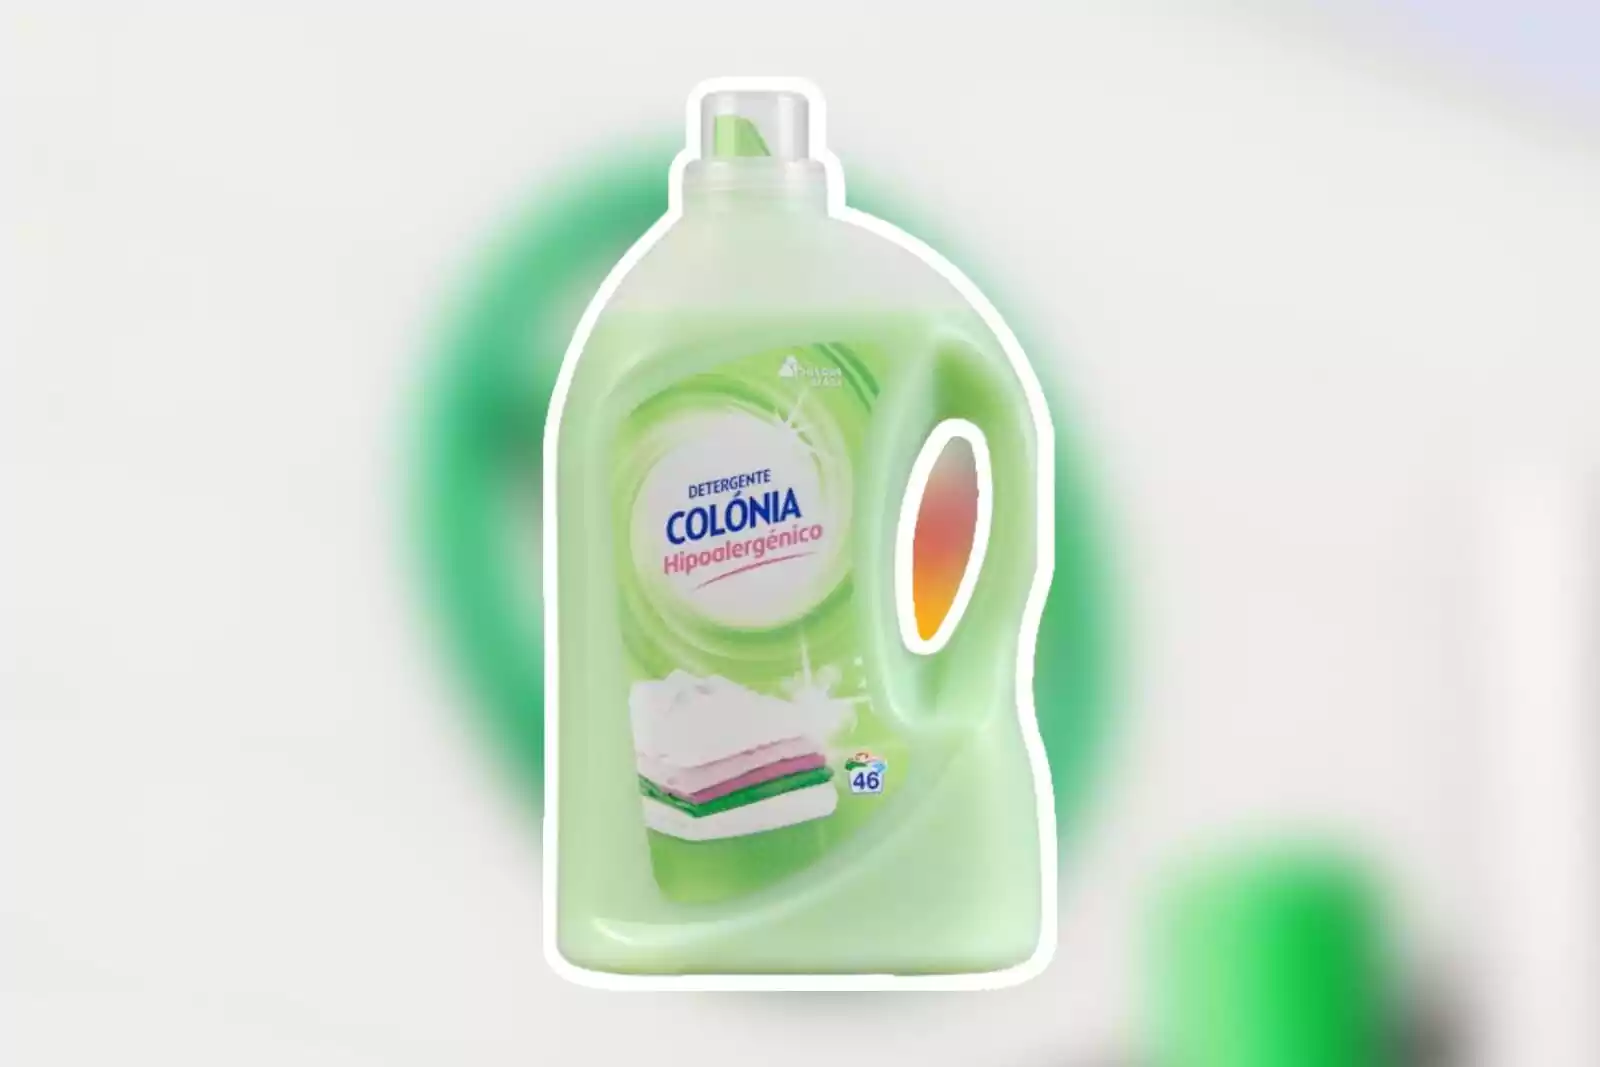 Bosque Verde Detergente lavadora liquido marsella Botella 3 l (46 lavados)